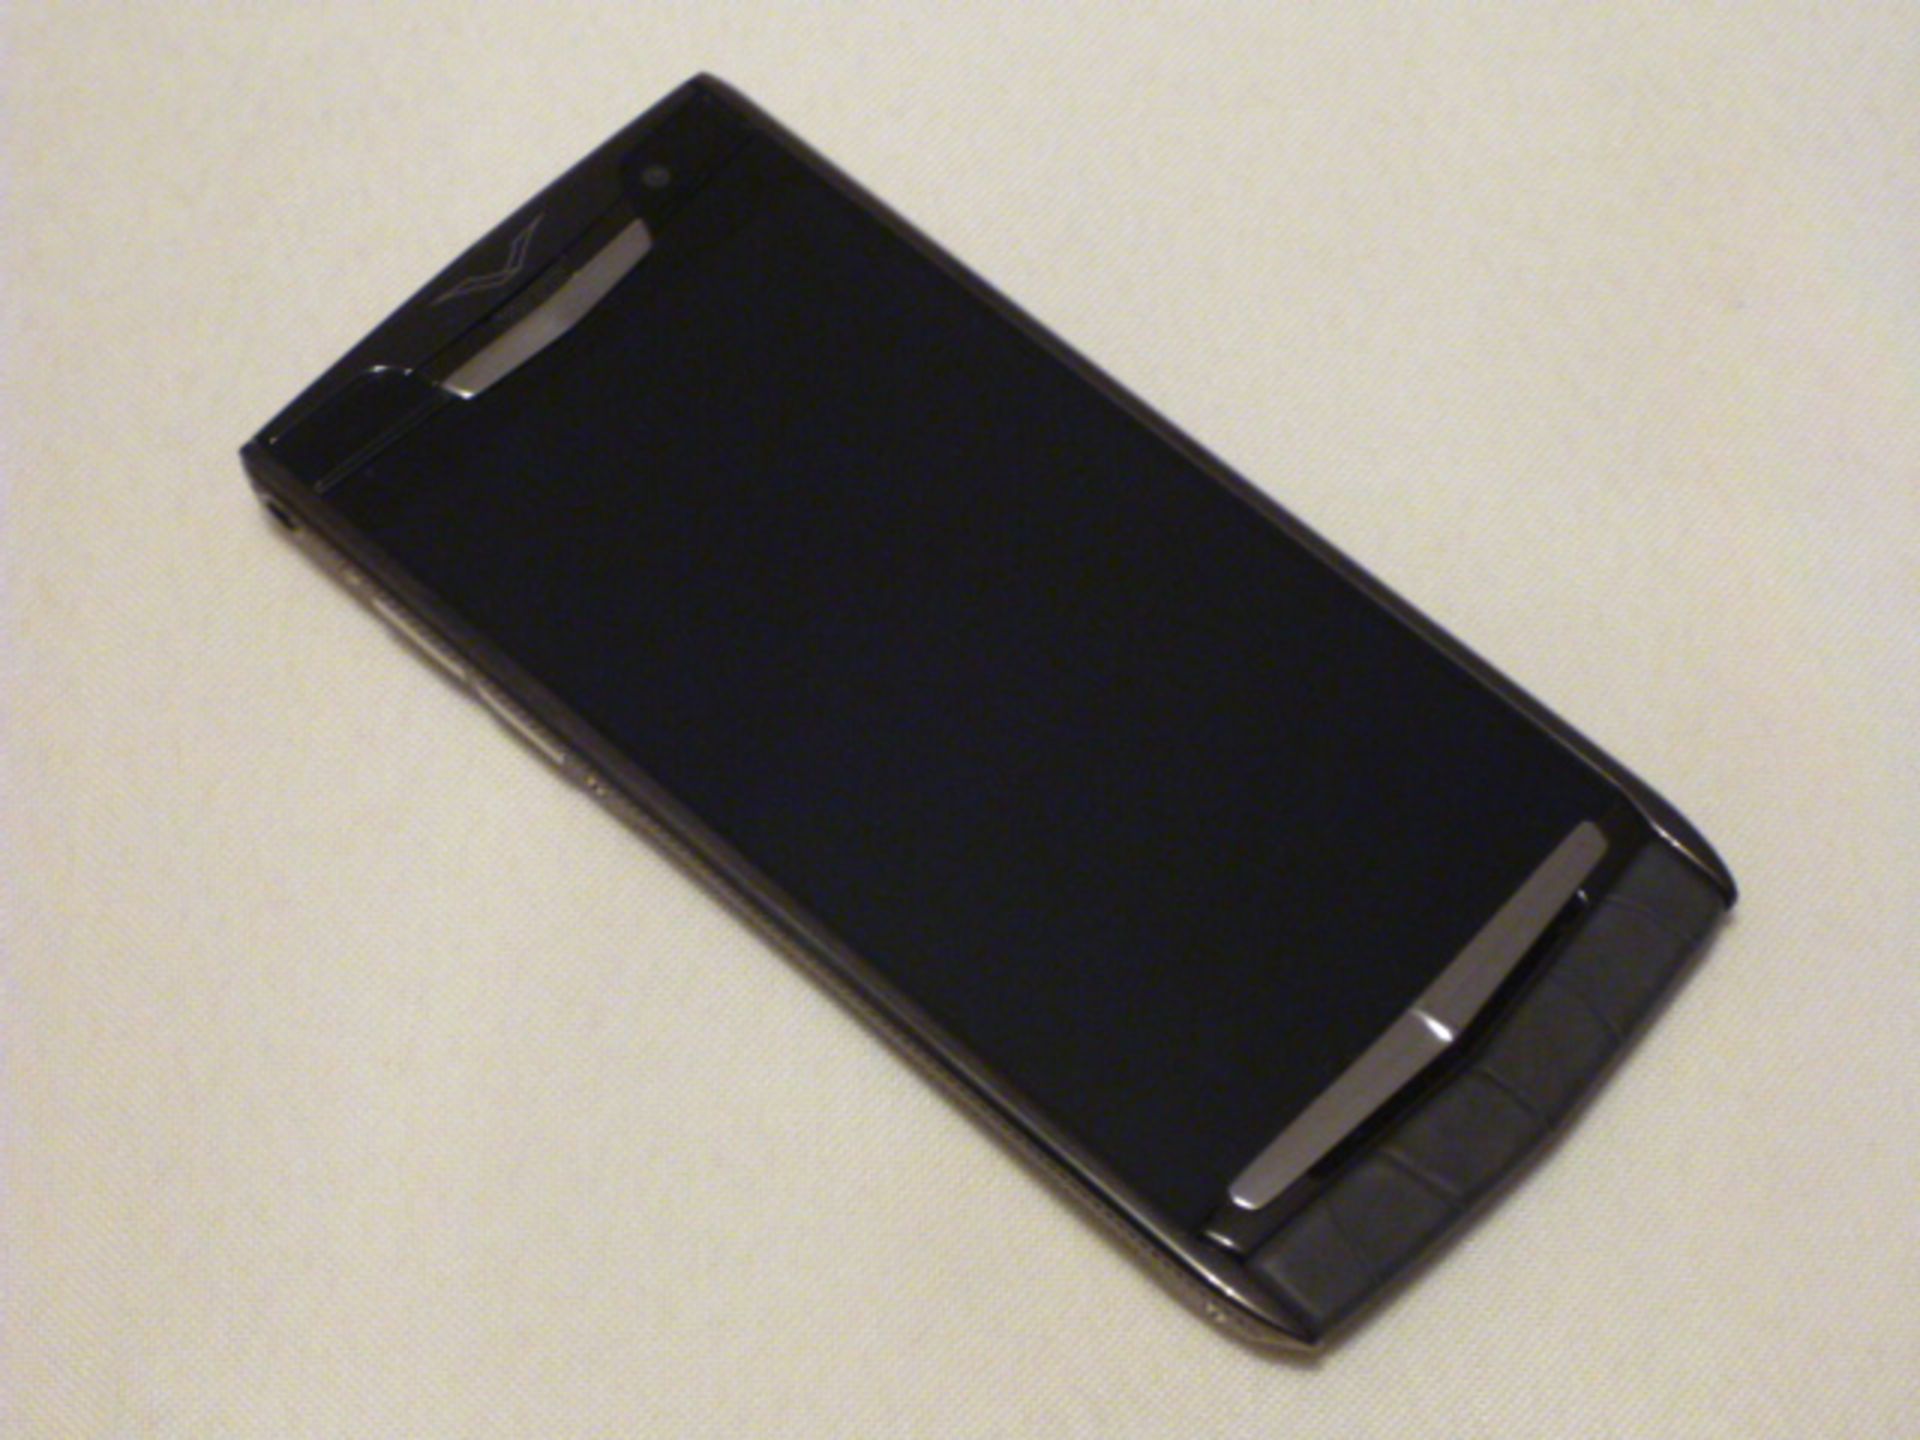 Vertu Signature Touch Phone, Clous De Paris, Black Alligator GL2. S/N 3-009257. Comes with Sales